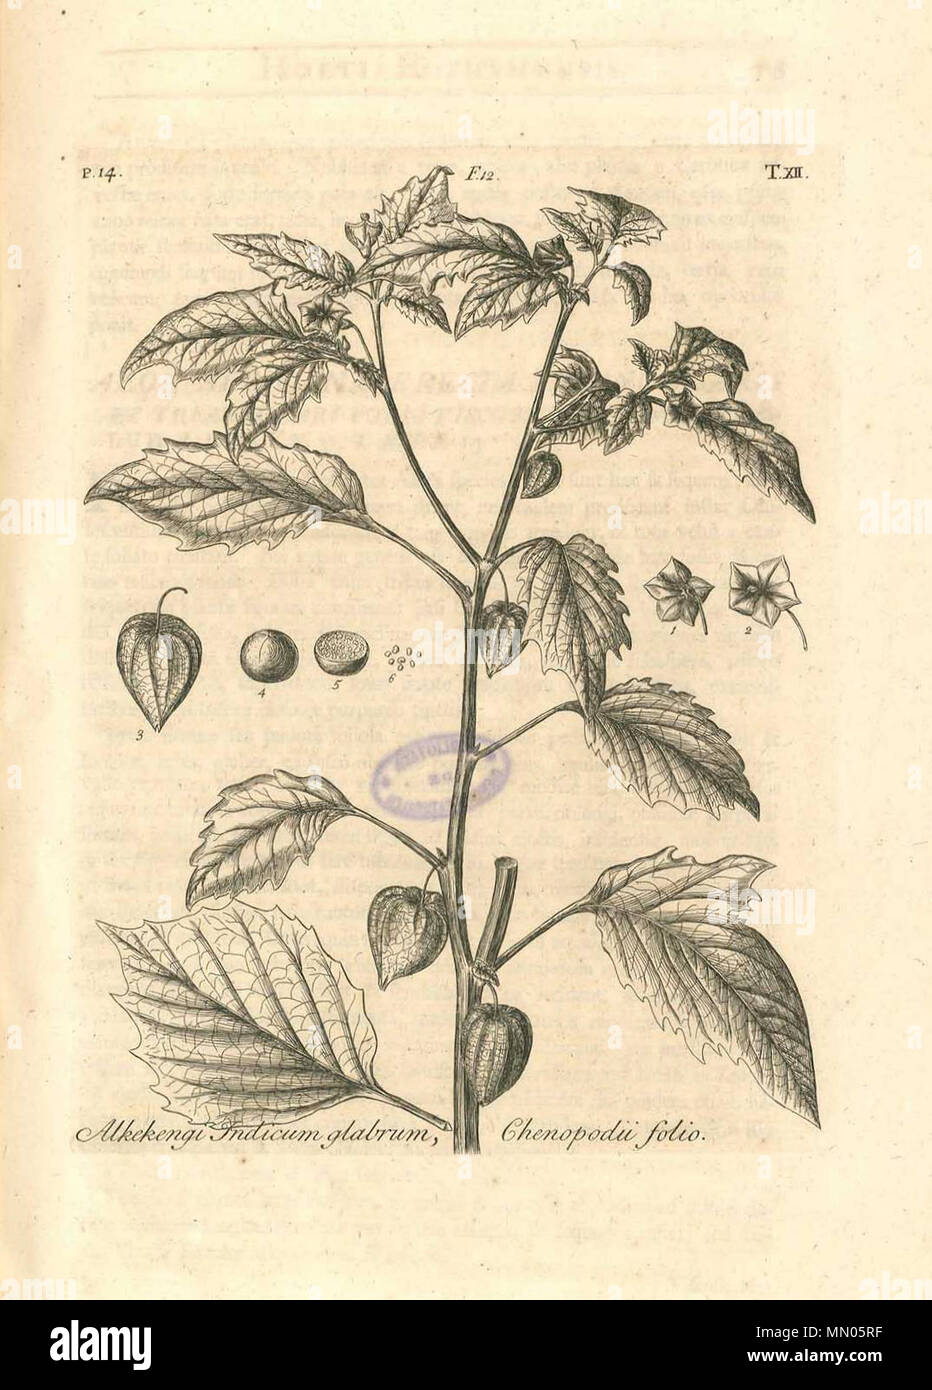 . English: Dillenius, J.J. (1732), Hortus Elthamensis plate 12, depicting Alkekengi Indicum glabrum, Chenopodii folio, now know as Physalis angulata L. Nederlands: Dillenius, J.J. (1732), Hortus Elthamensis plaat 12, met een afbeelding van Alkekengi Indicum glabrum, Chenopodii folio, tegenwoordig bekend als Physalis angulata L. Deutsch: Dillenius, J.J. (1732), Hortus Elthamensis Tafel 12, mit einer Darstellung von Alkekengi Indicum glabrum, Chenopodii folio, jetzt bekannt als Physalis angulata L. Français : Dillenius, J.J. (1732), Hortus Elthamensis lame 12, représentant Alkekengi Indicum glab Stock Photo